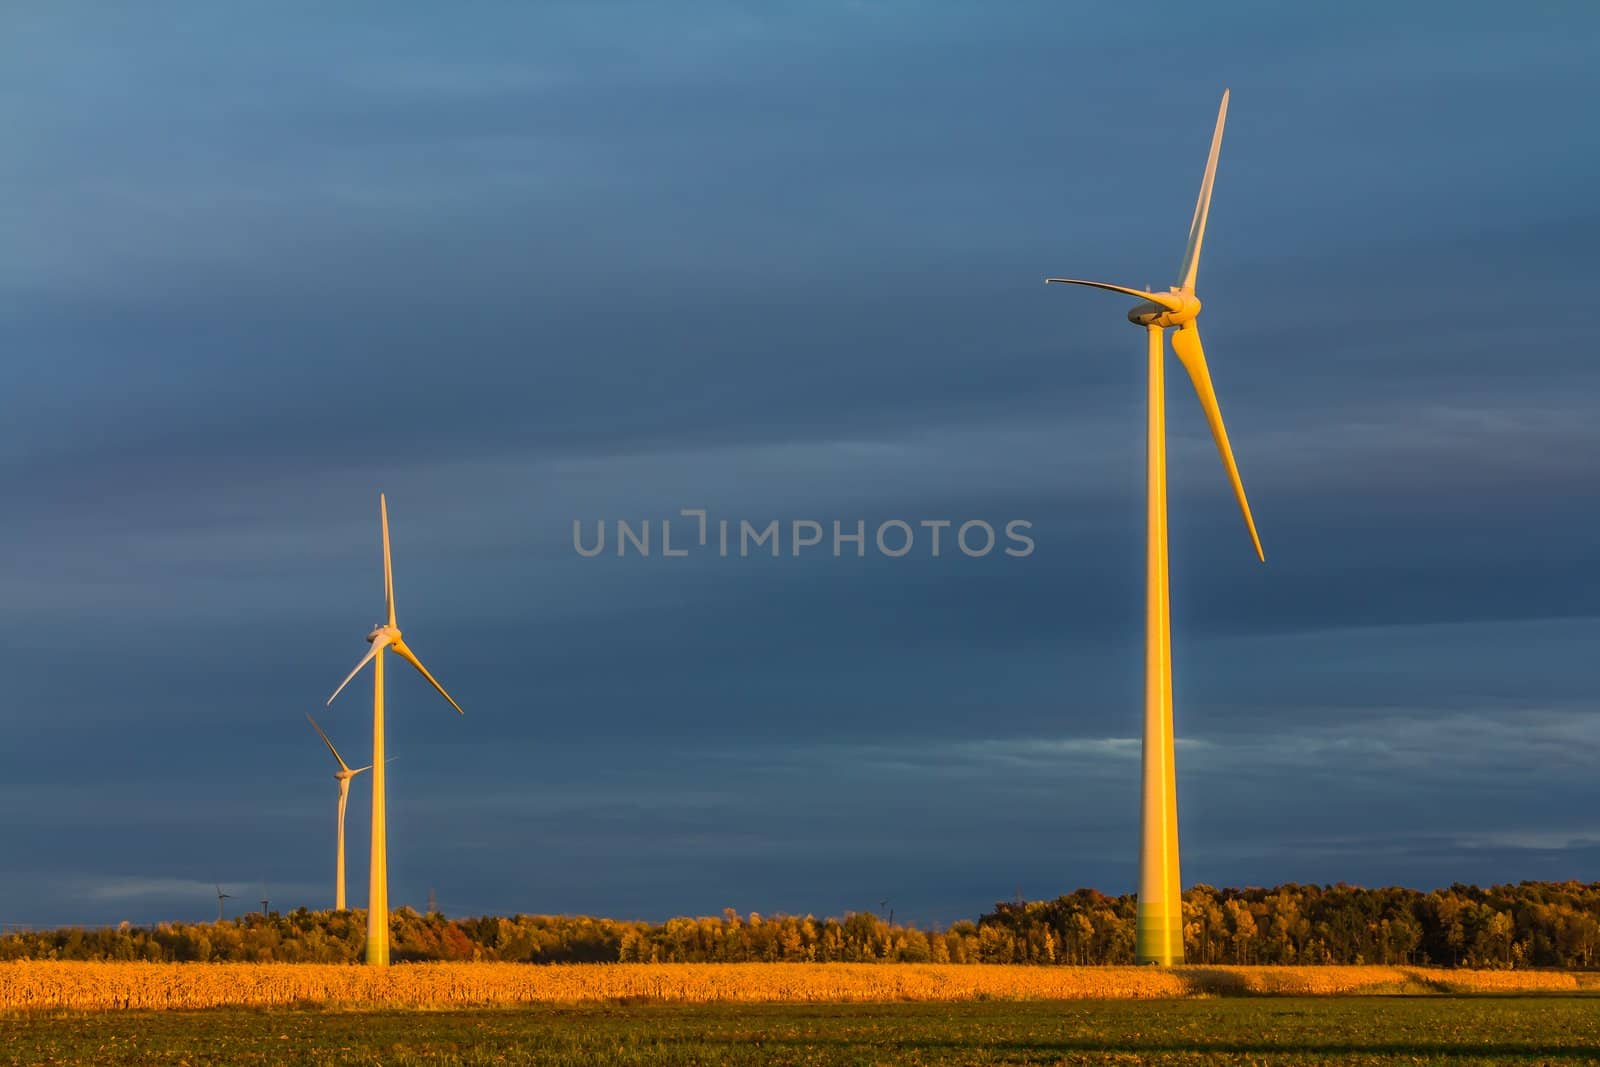 Wind turbine in a field by petkolophoto